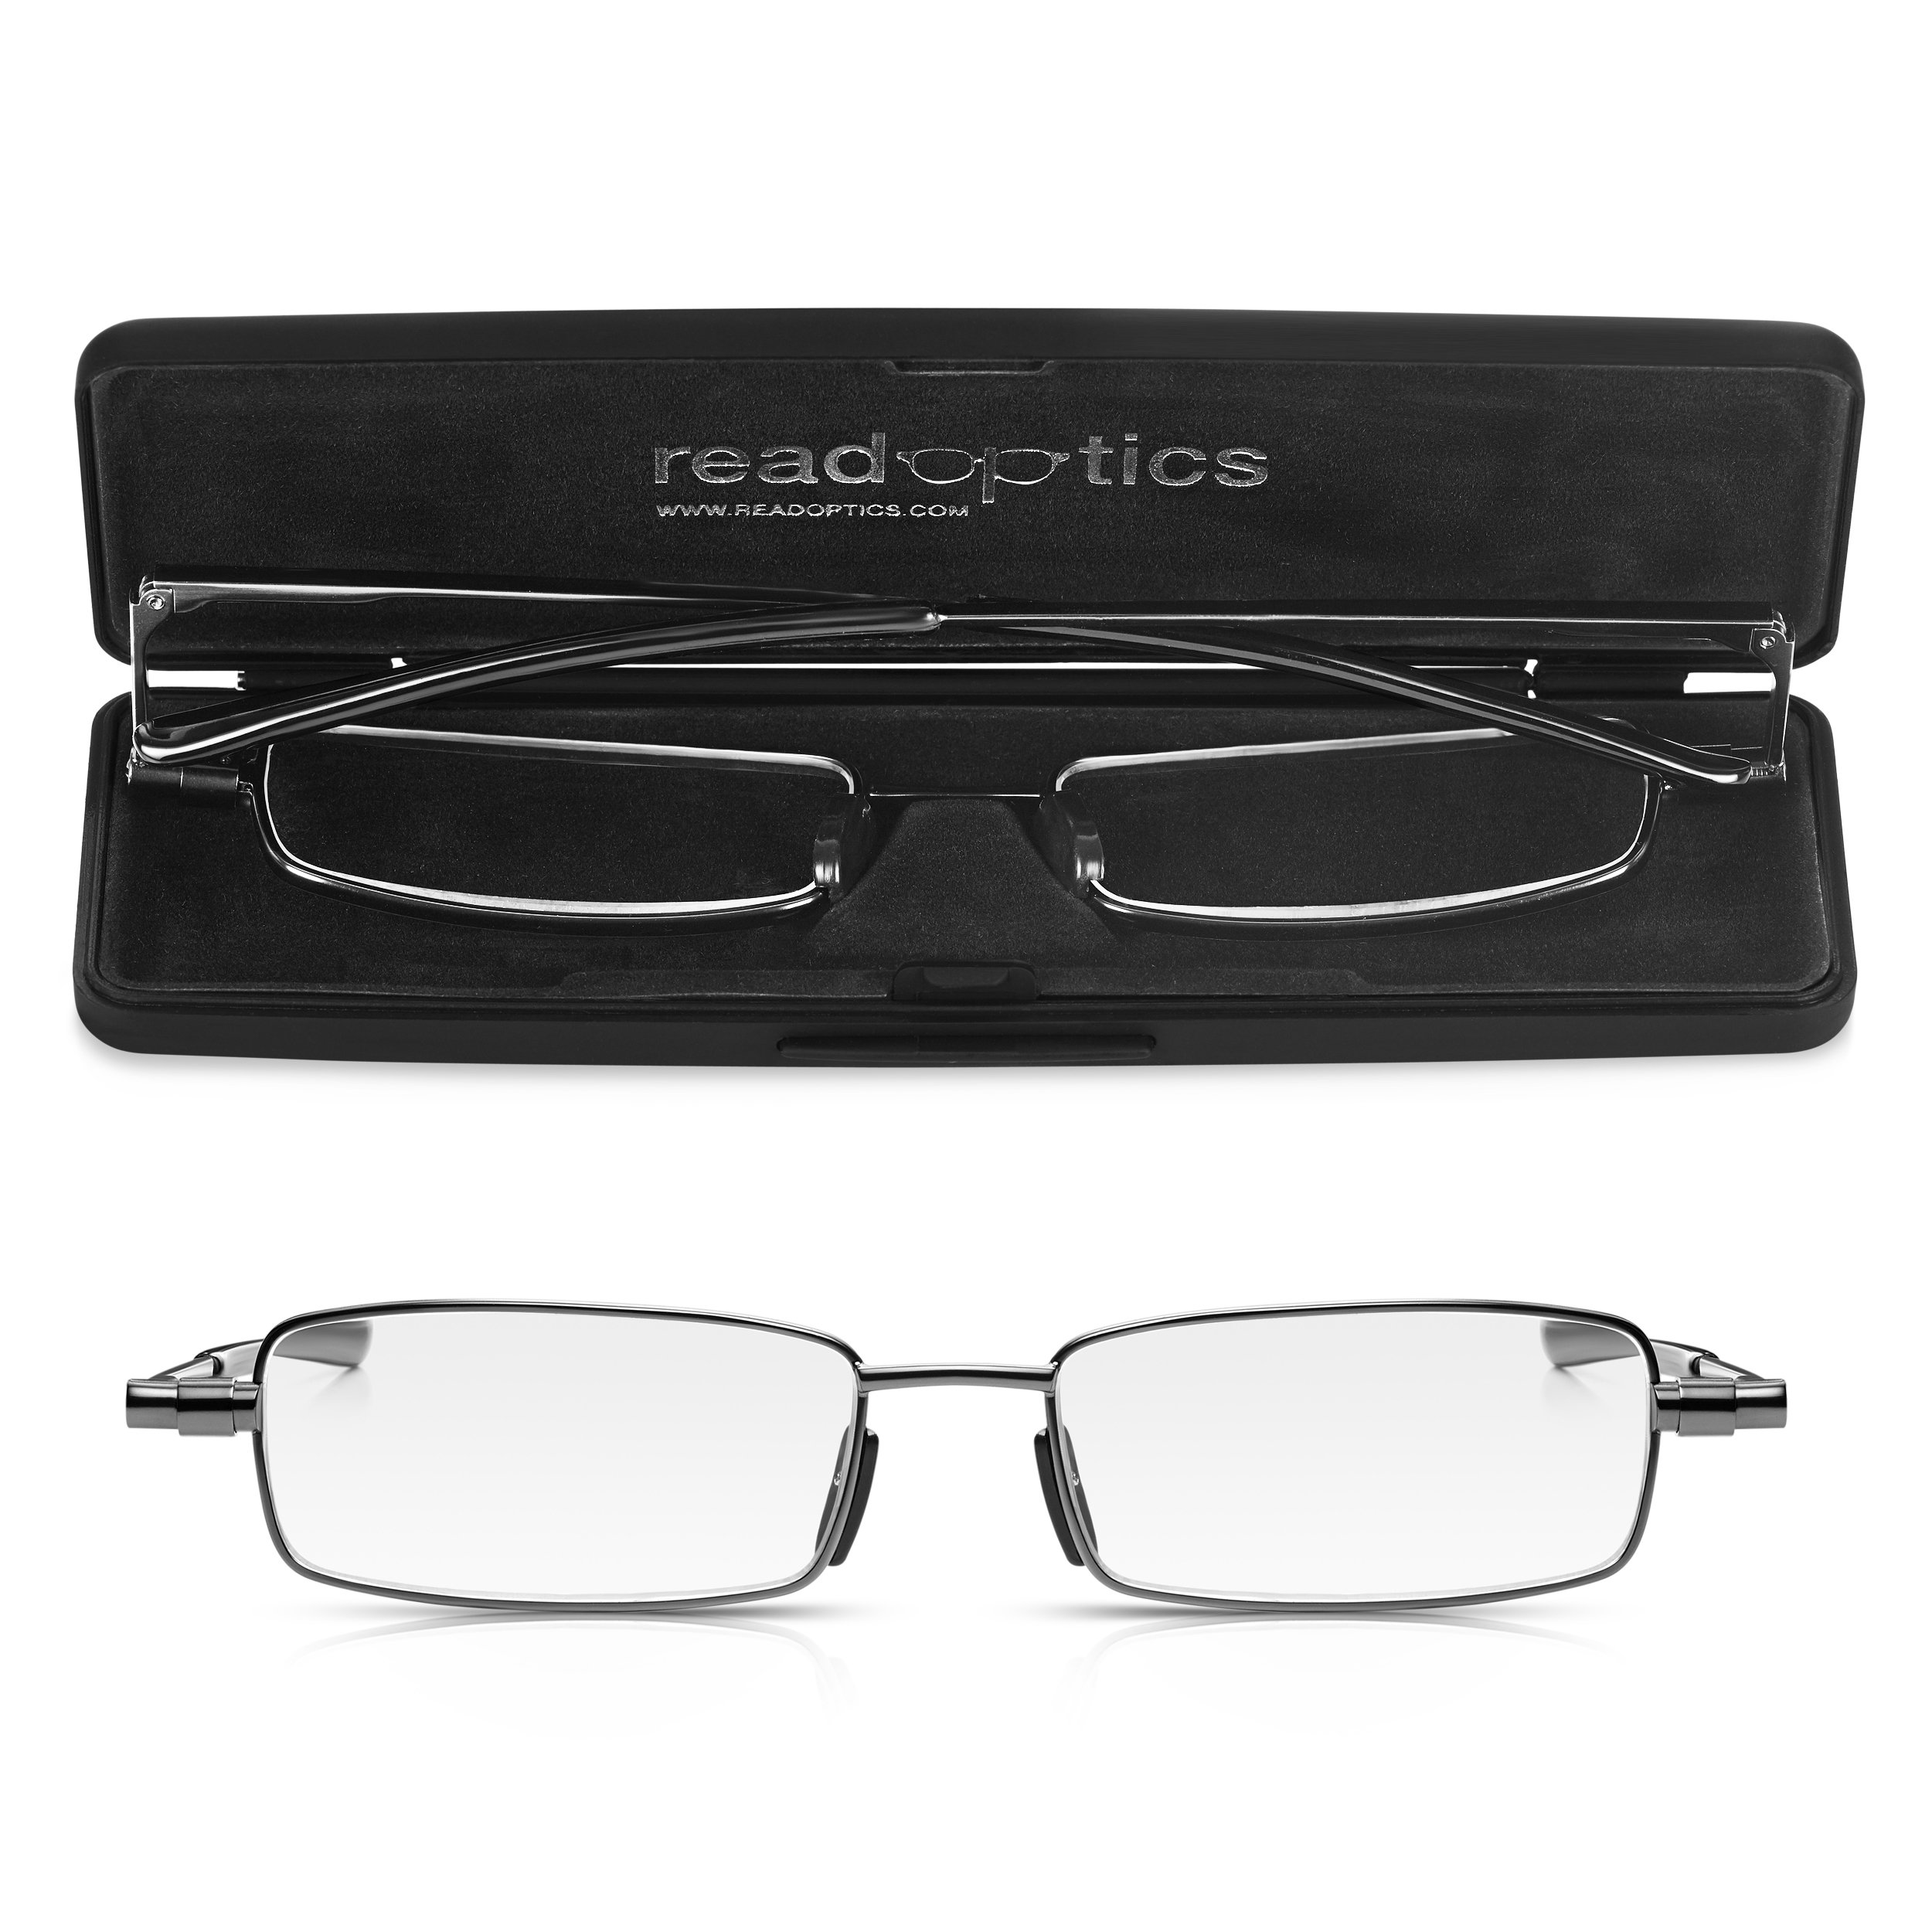 Flache klappbare Brille +2,5. Stilvolle, nicht verschreibungspflichtige Lesebrille für Damen und Herren, einfach klappbar, mit schwarzem Schutzetui. Read Optics